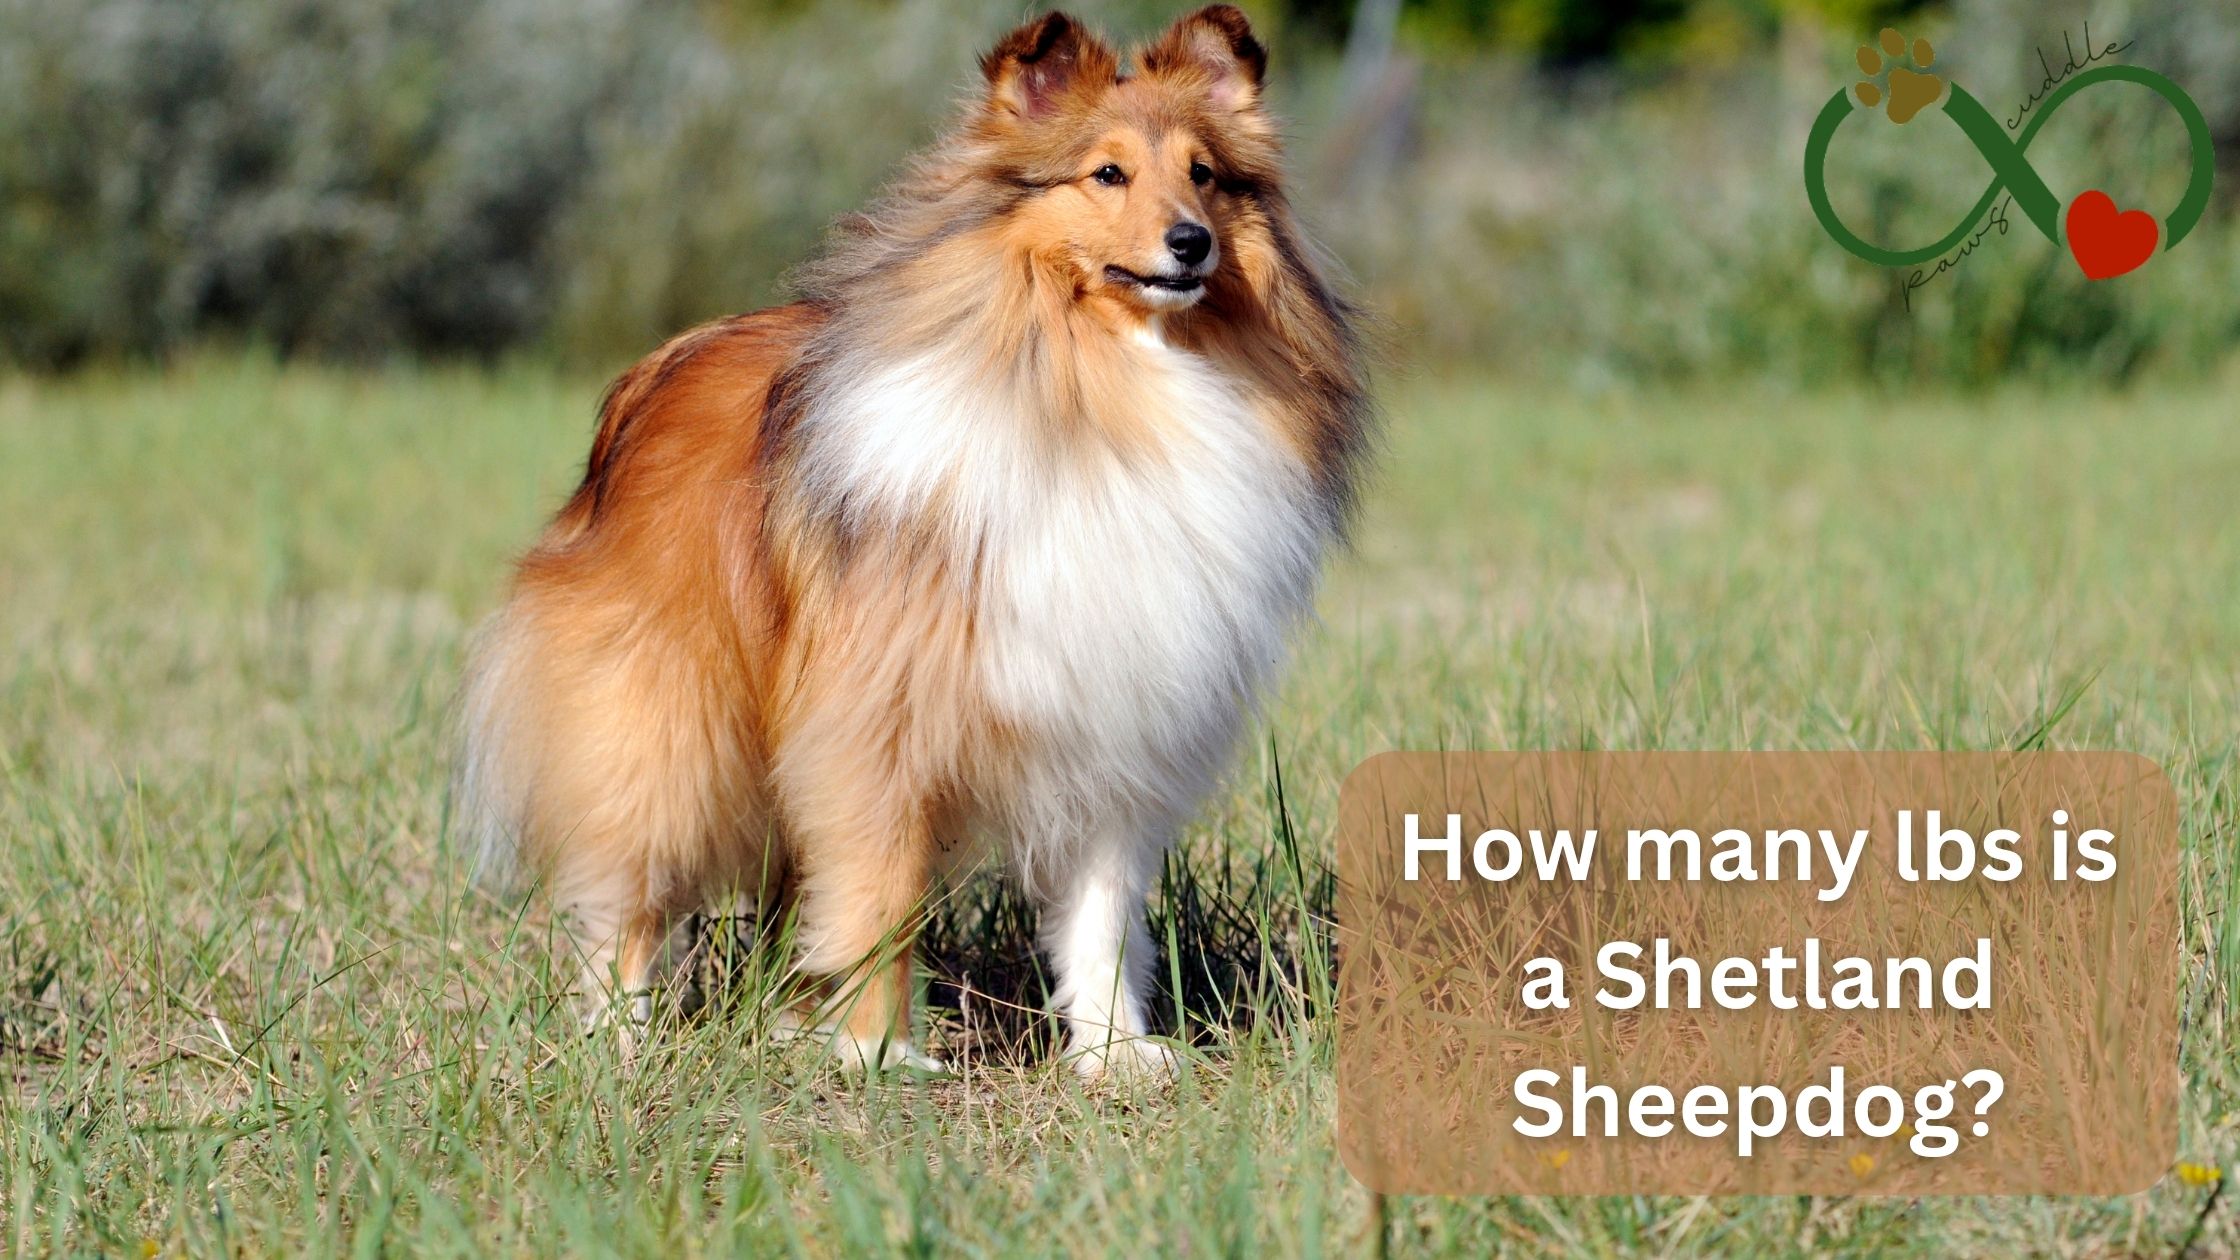 /How many lbs is a Shetland Sheepdog?